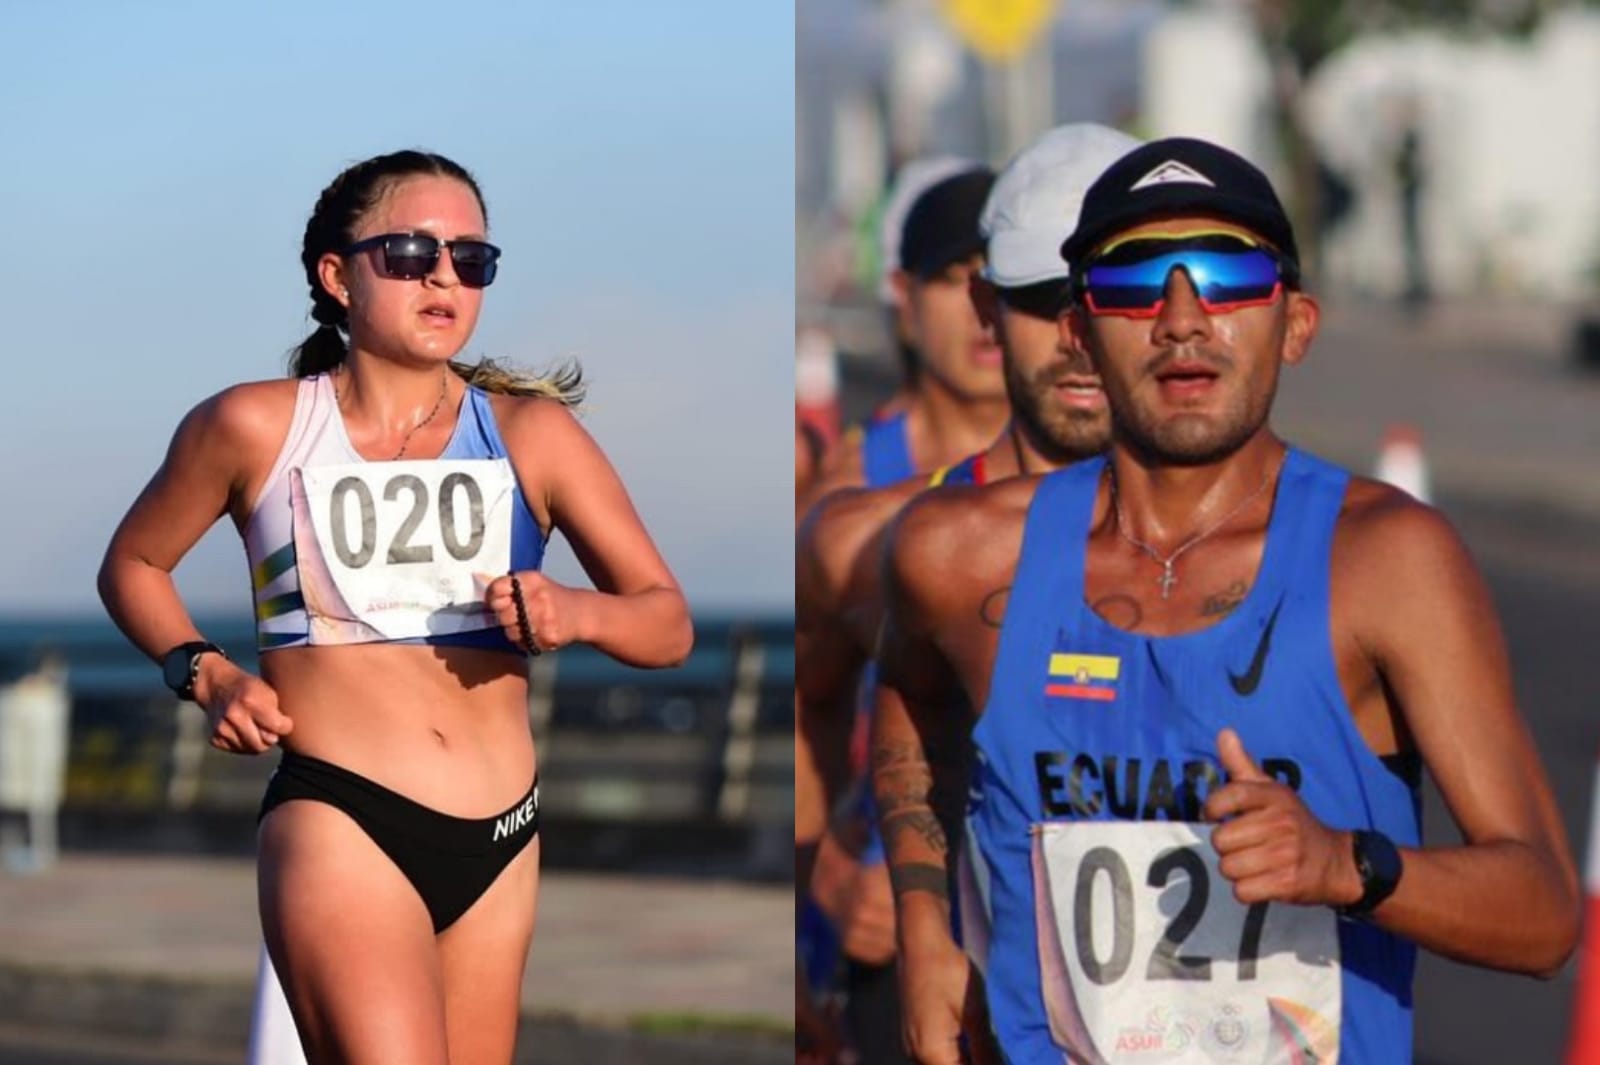 Glenda Morejón y Daniel Pintado se adjudican el oro en los 20km marcha